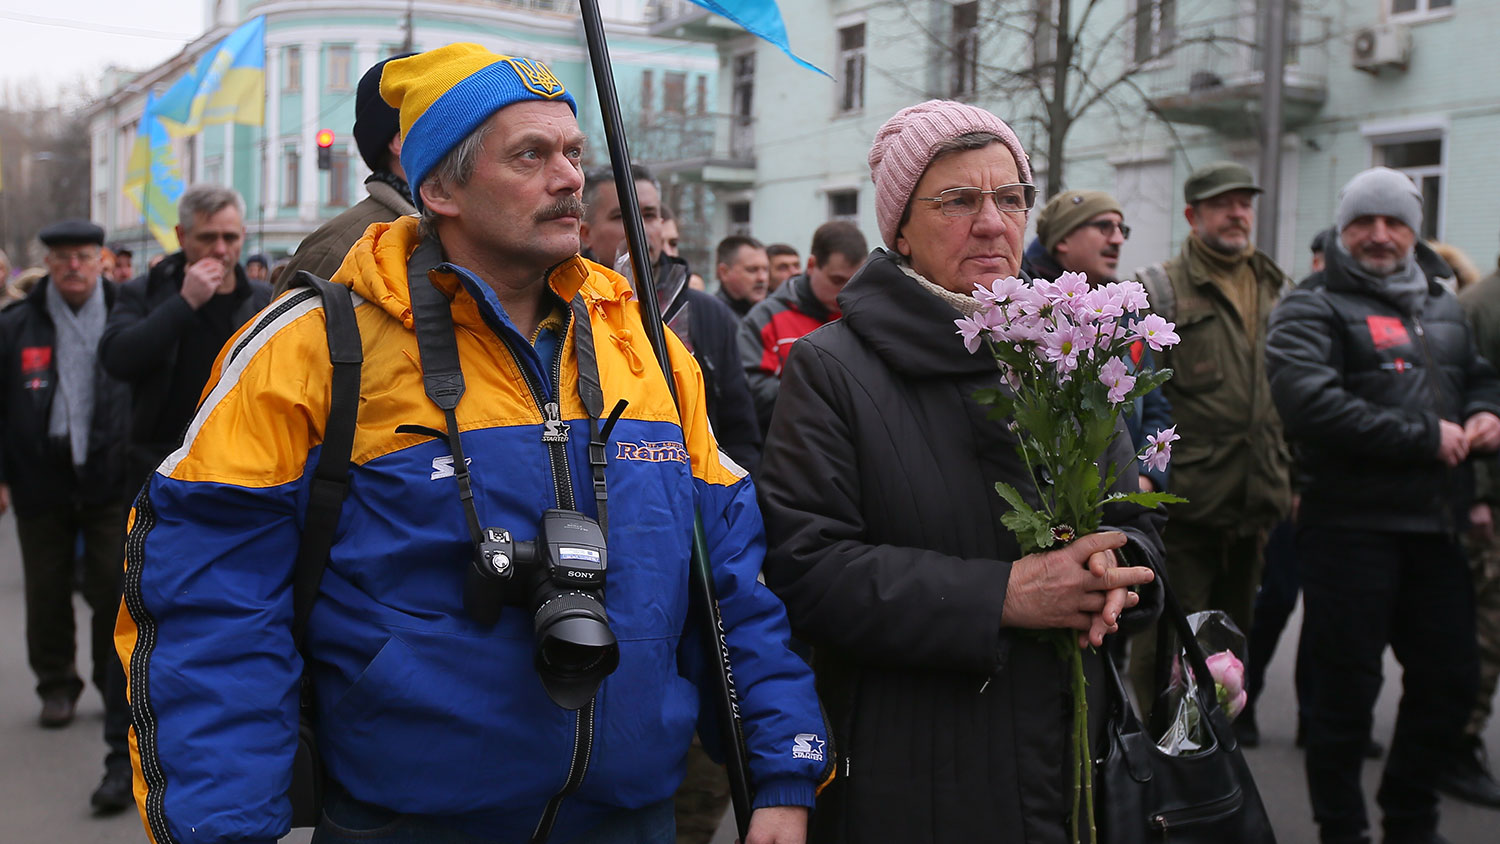 Участники &laquo;Марша Достоинства&raquo; в Киеве, посвященного 6-летней годовщине событий на Майдане, 20 февраля 2020 года